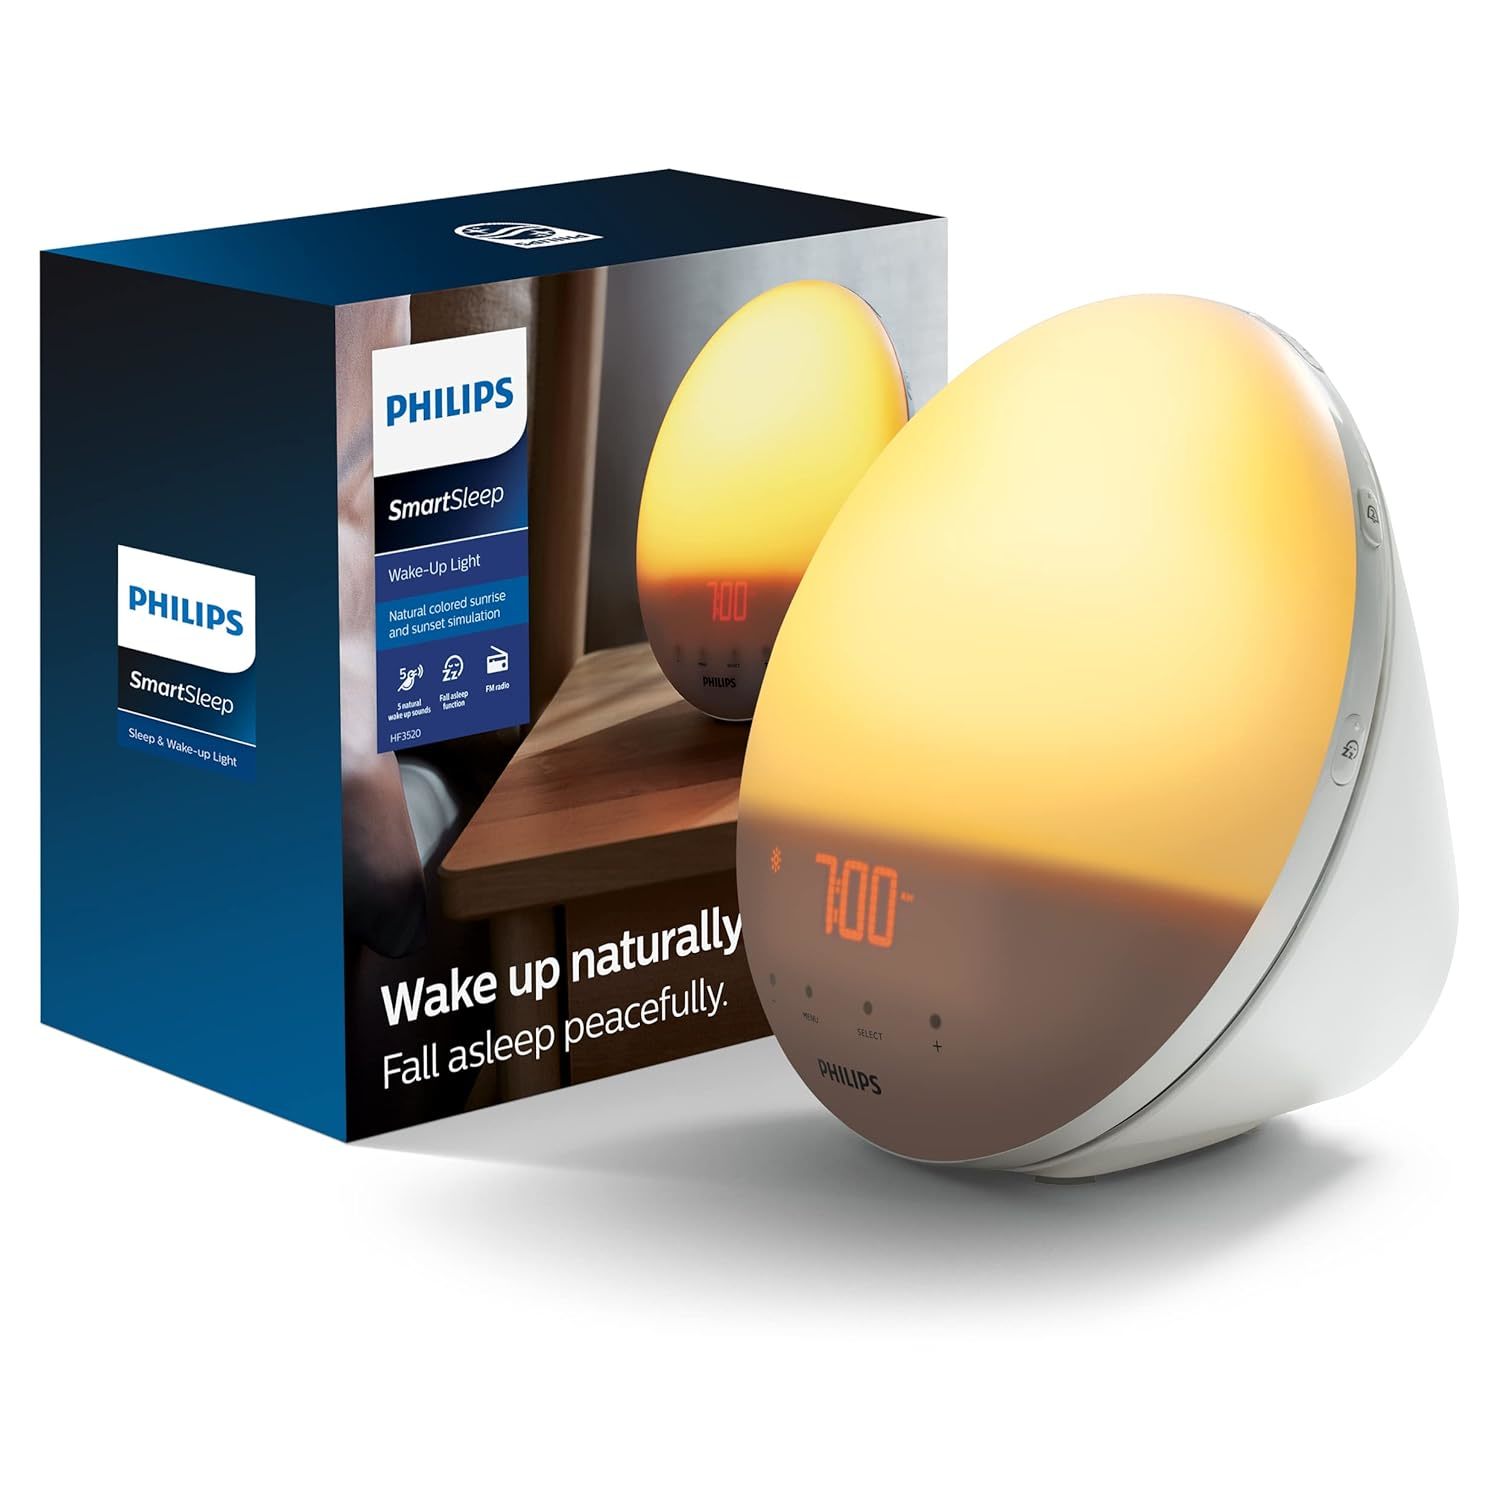 Philips SmartSleep Wake-up Light, Colored Sunrise and Sunset Simulation, 5 Natur - $171.99